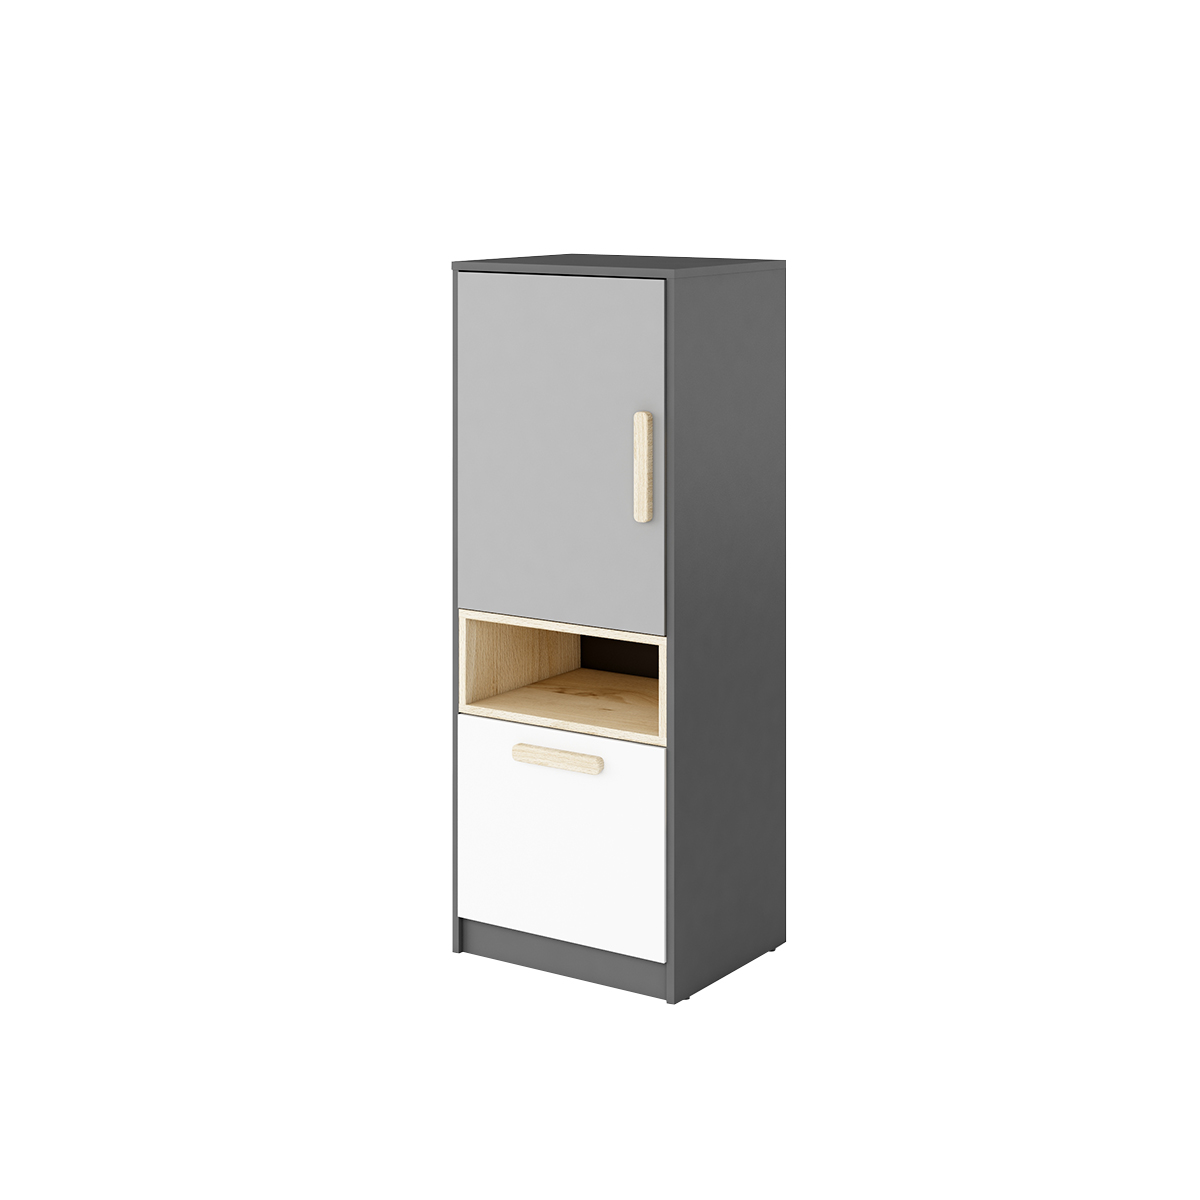 petits-meubles-tony-PO07GBS-petite-armoire-colonne-2-portes-gris-blanc-01